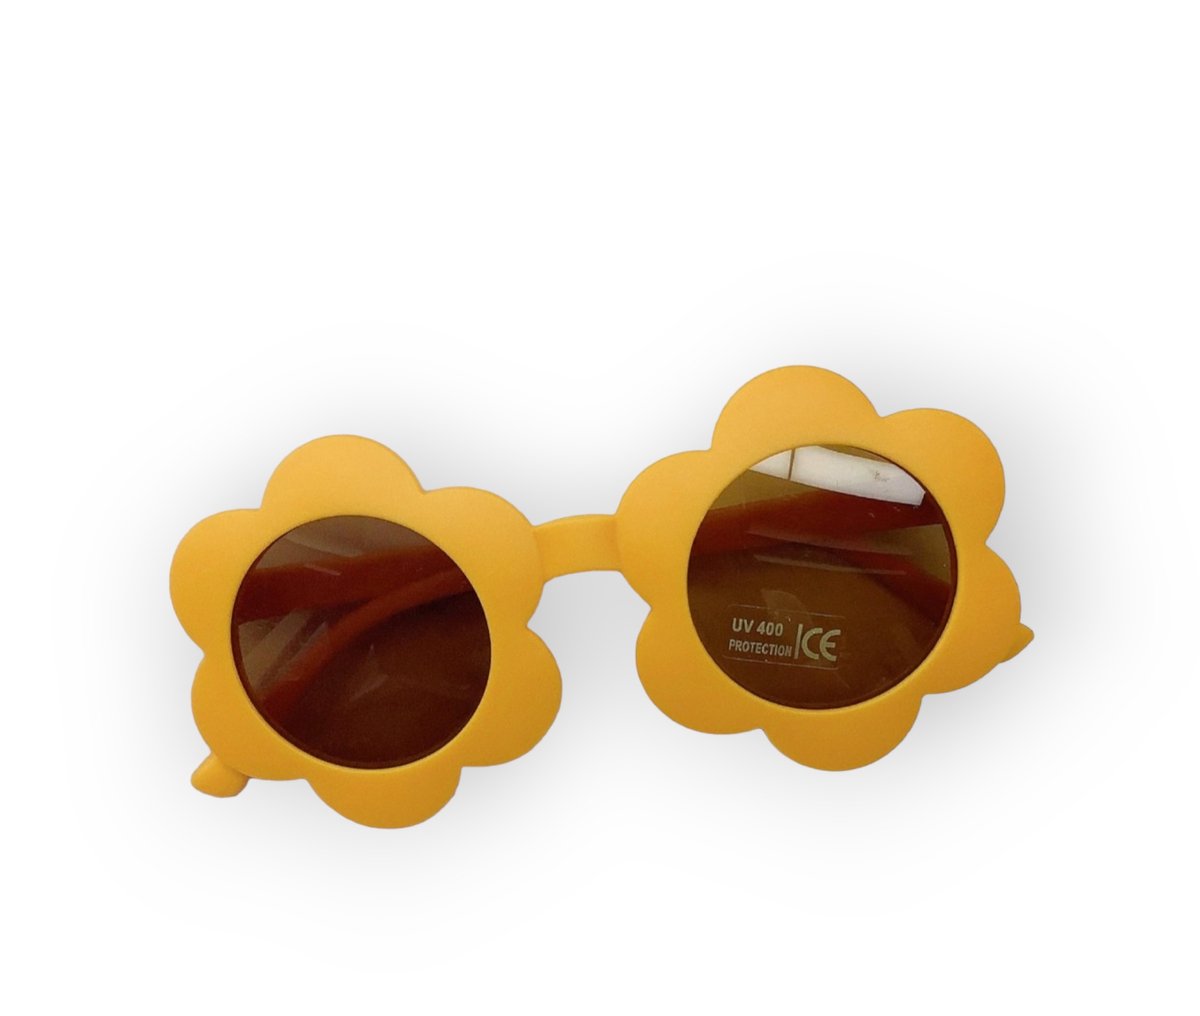 UKKYPUK kinder zonnebril met UV400 bescherming | Voor kinderen van 2 t/m 6 jaar | Cadeau | | kinderzonnebril | gratis beschermhoesje | Verjaardag | Unisex | Opa en oma | Verassing | Hippe retro vintage kinderzonnebril |